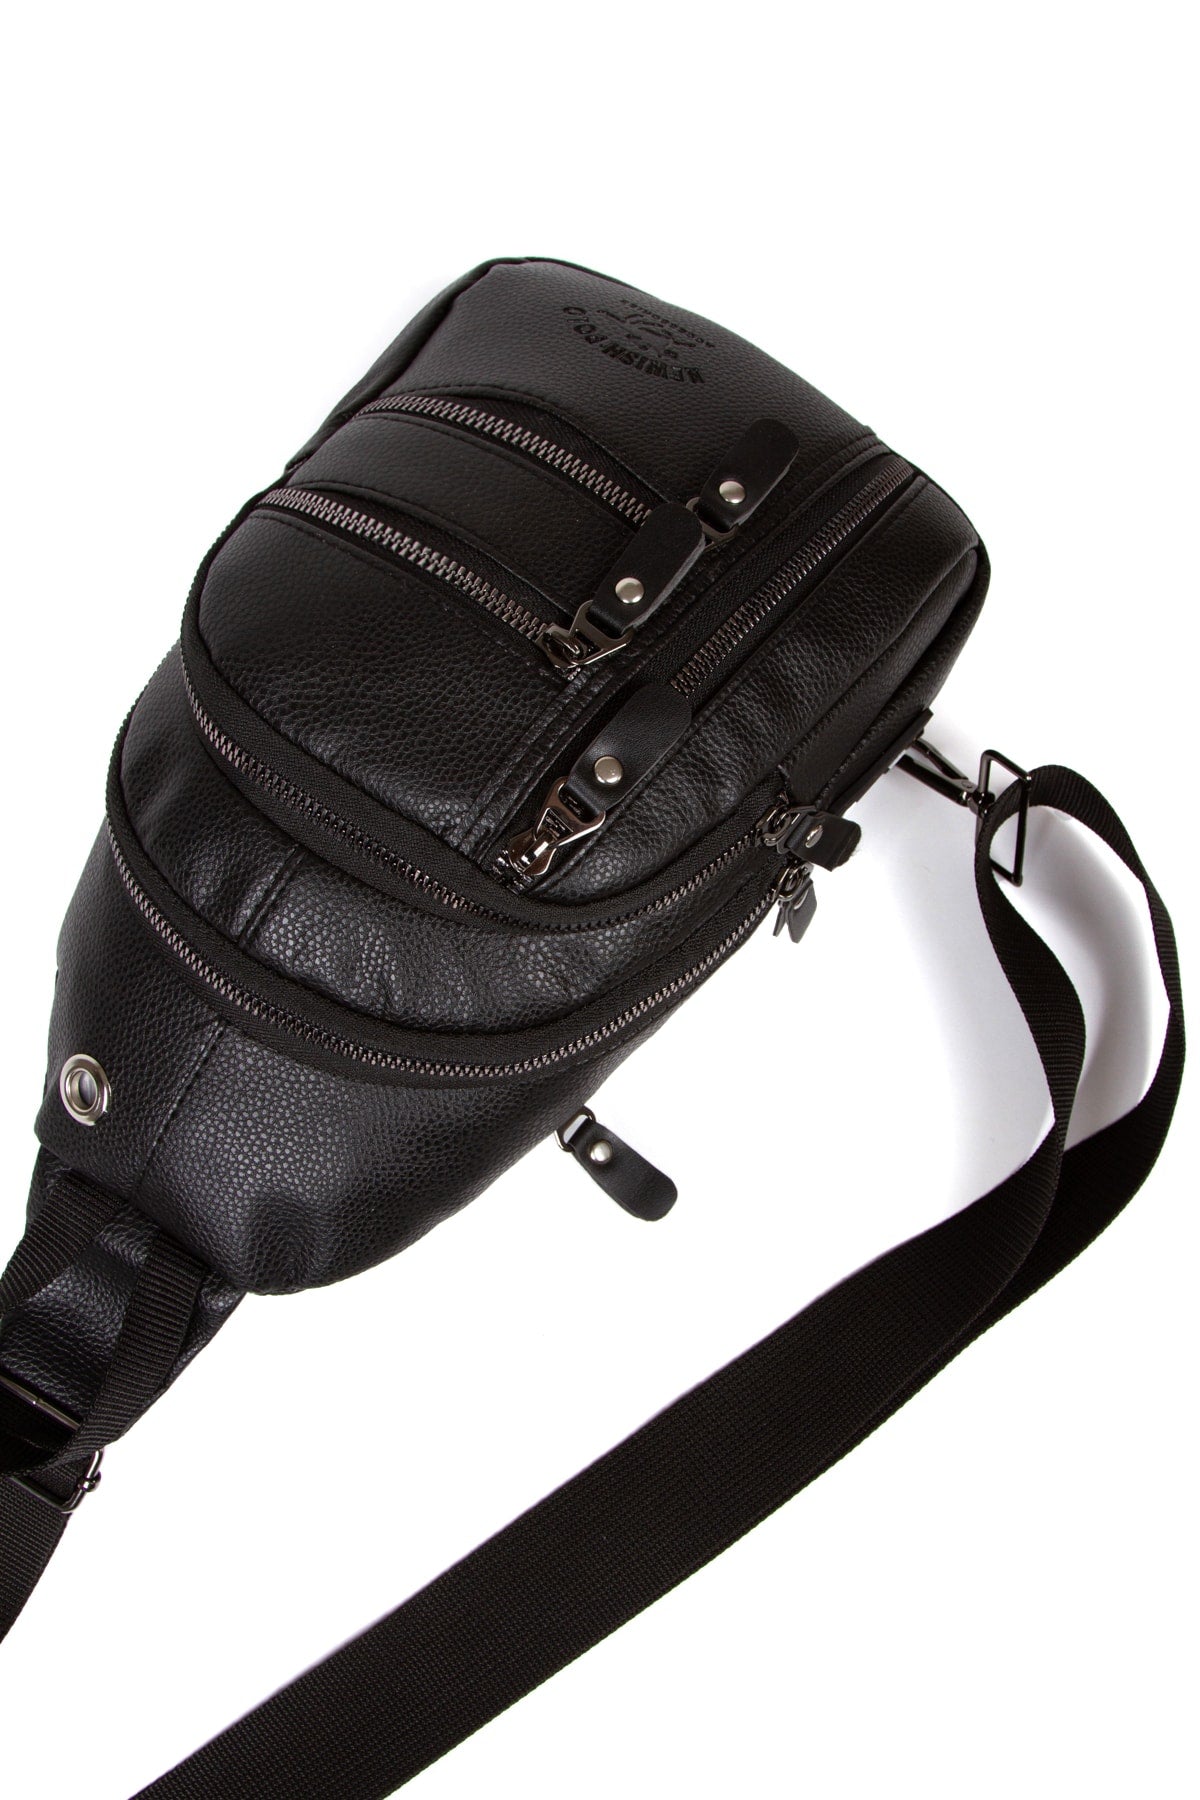 Black Unisex Cross Adjustable Strap Shoulder Bag Lt-3745